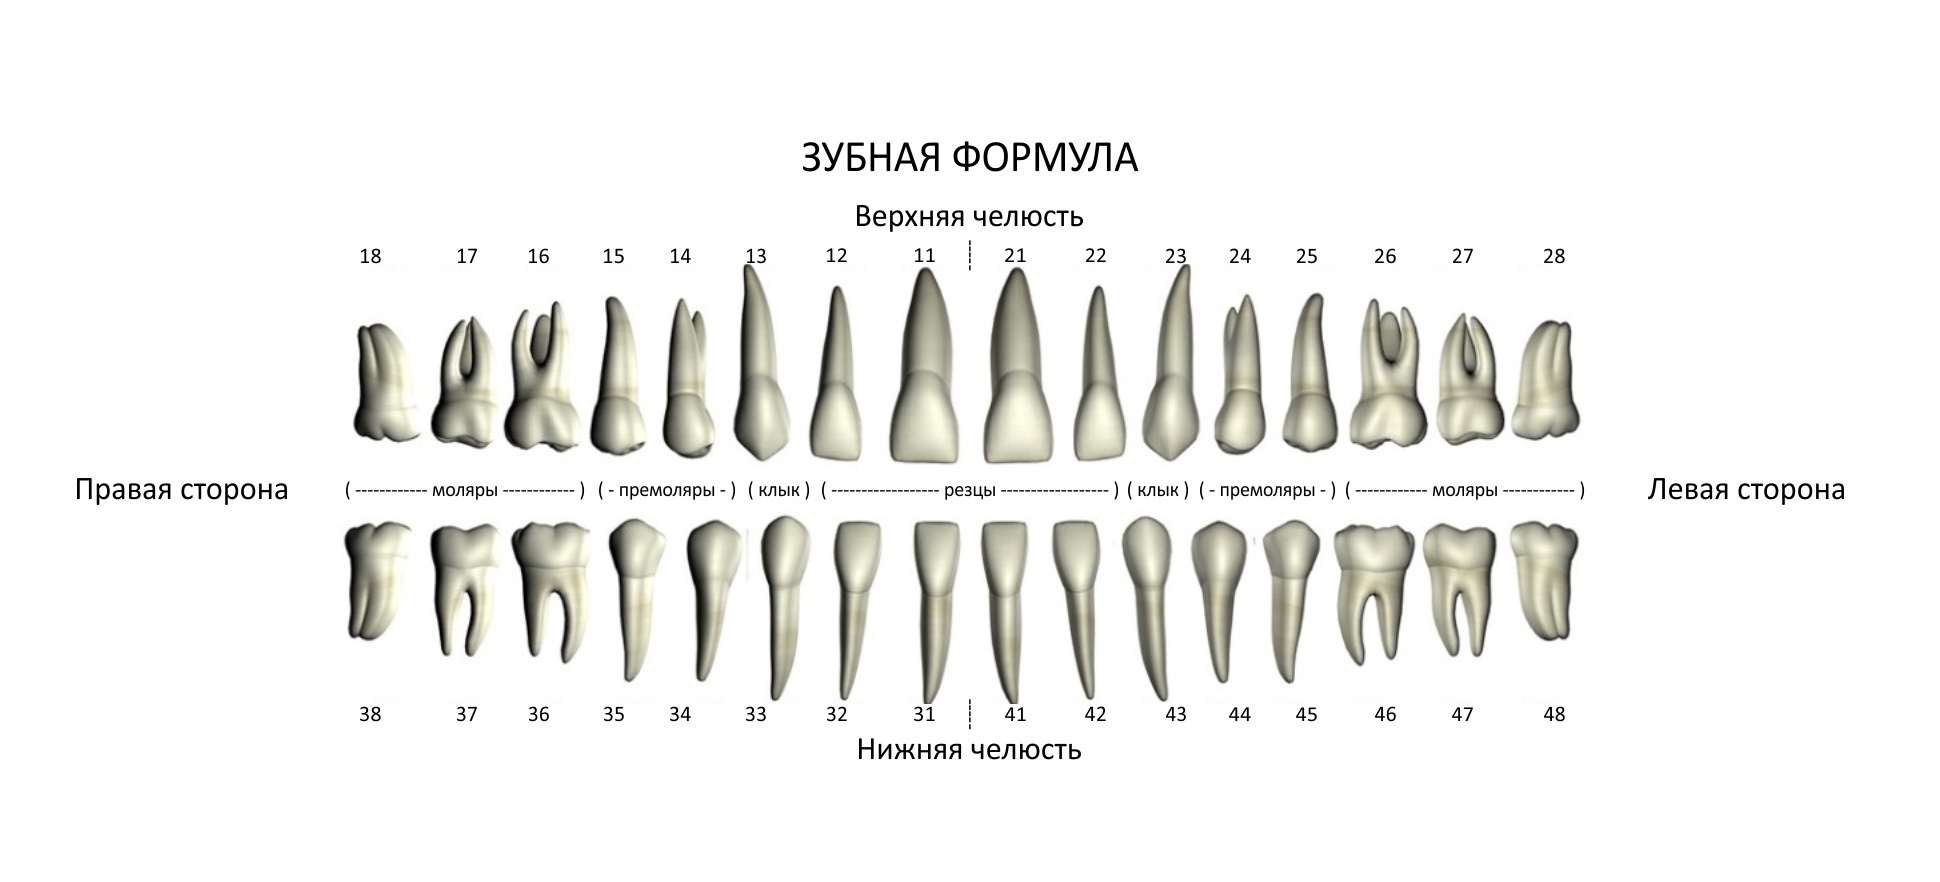 Премоляры и моляры предназначены для у млекопитающих. Зубная формула стоматология. Зубная формула резцы клыки премоляры. Зубы строение зубная формула. Зубная формула в стоматологии таблица.